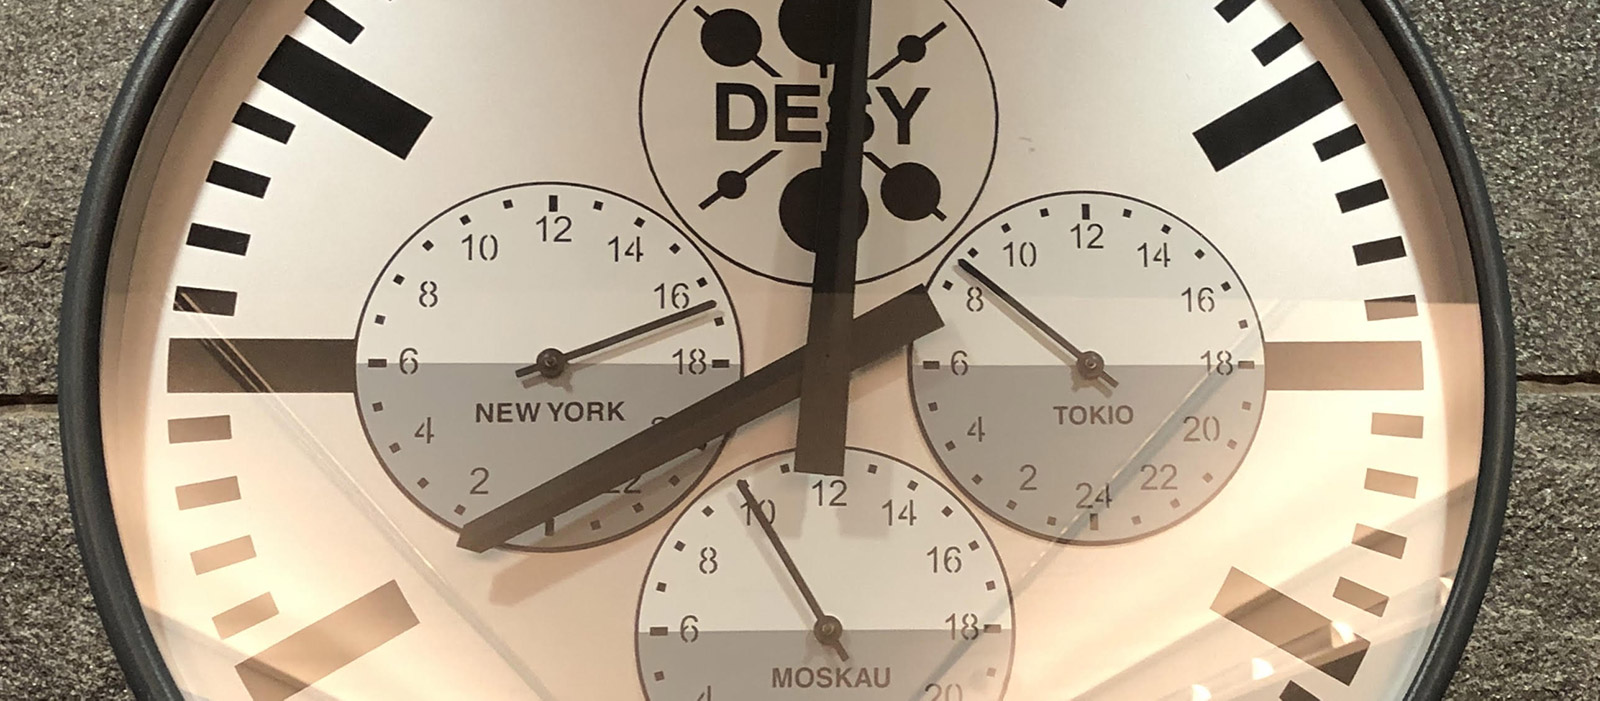 DESY clock